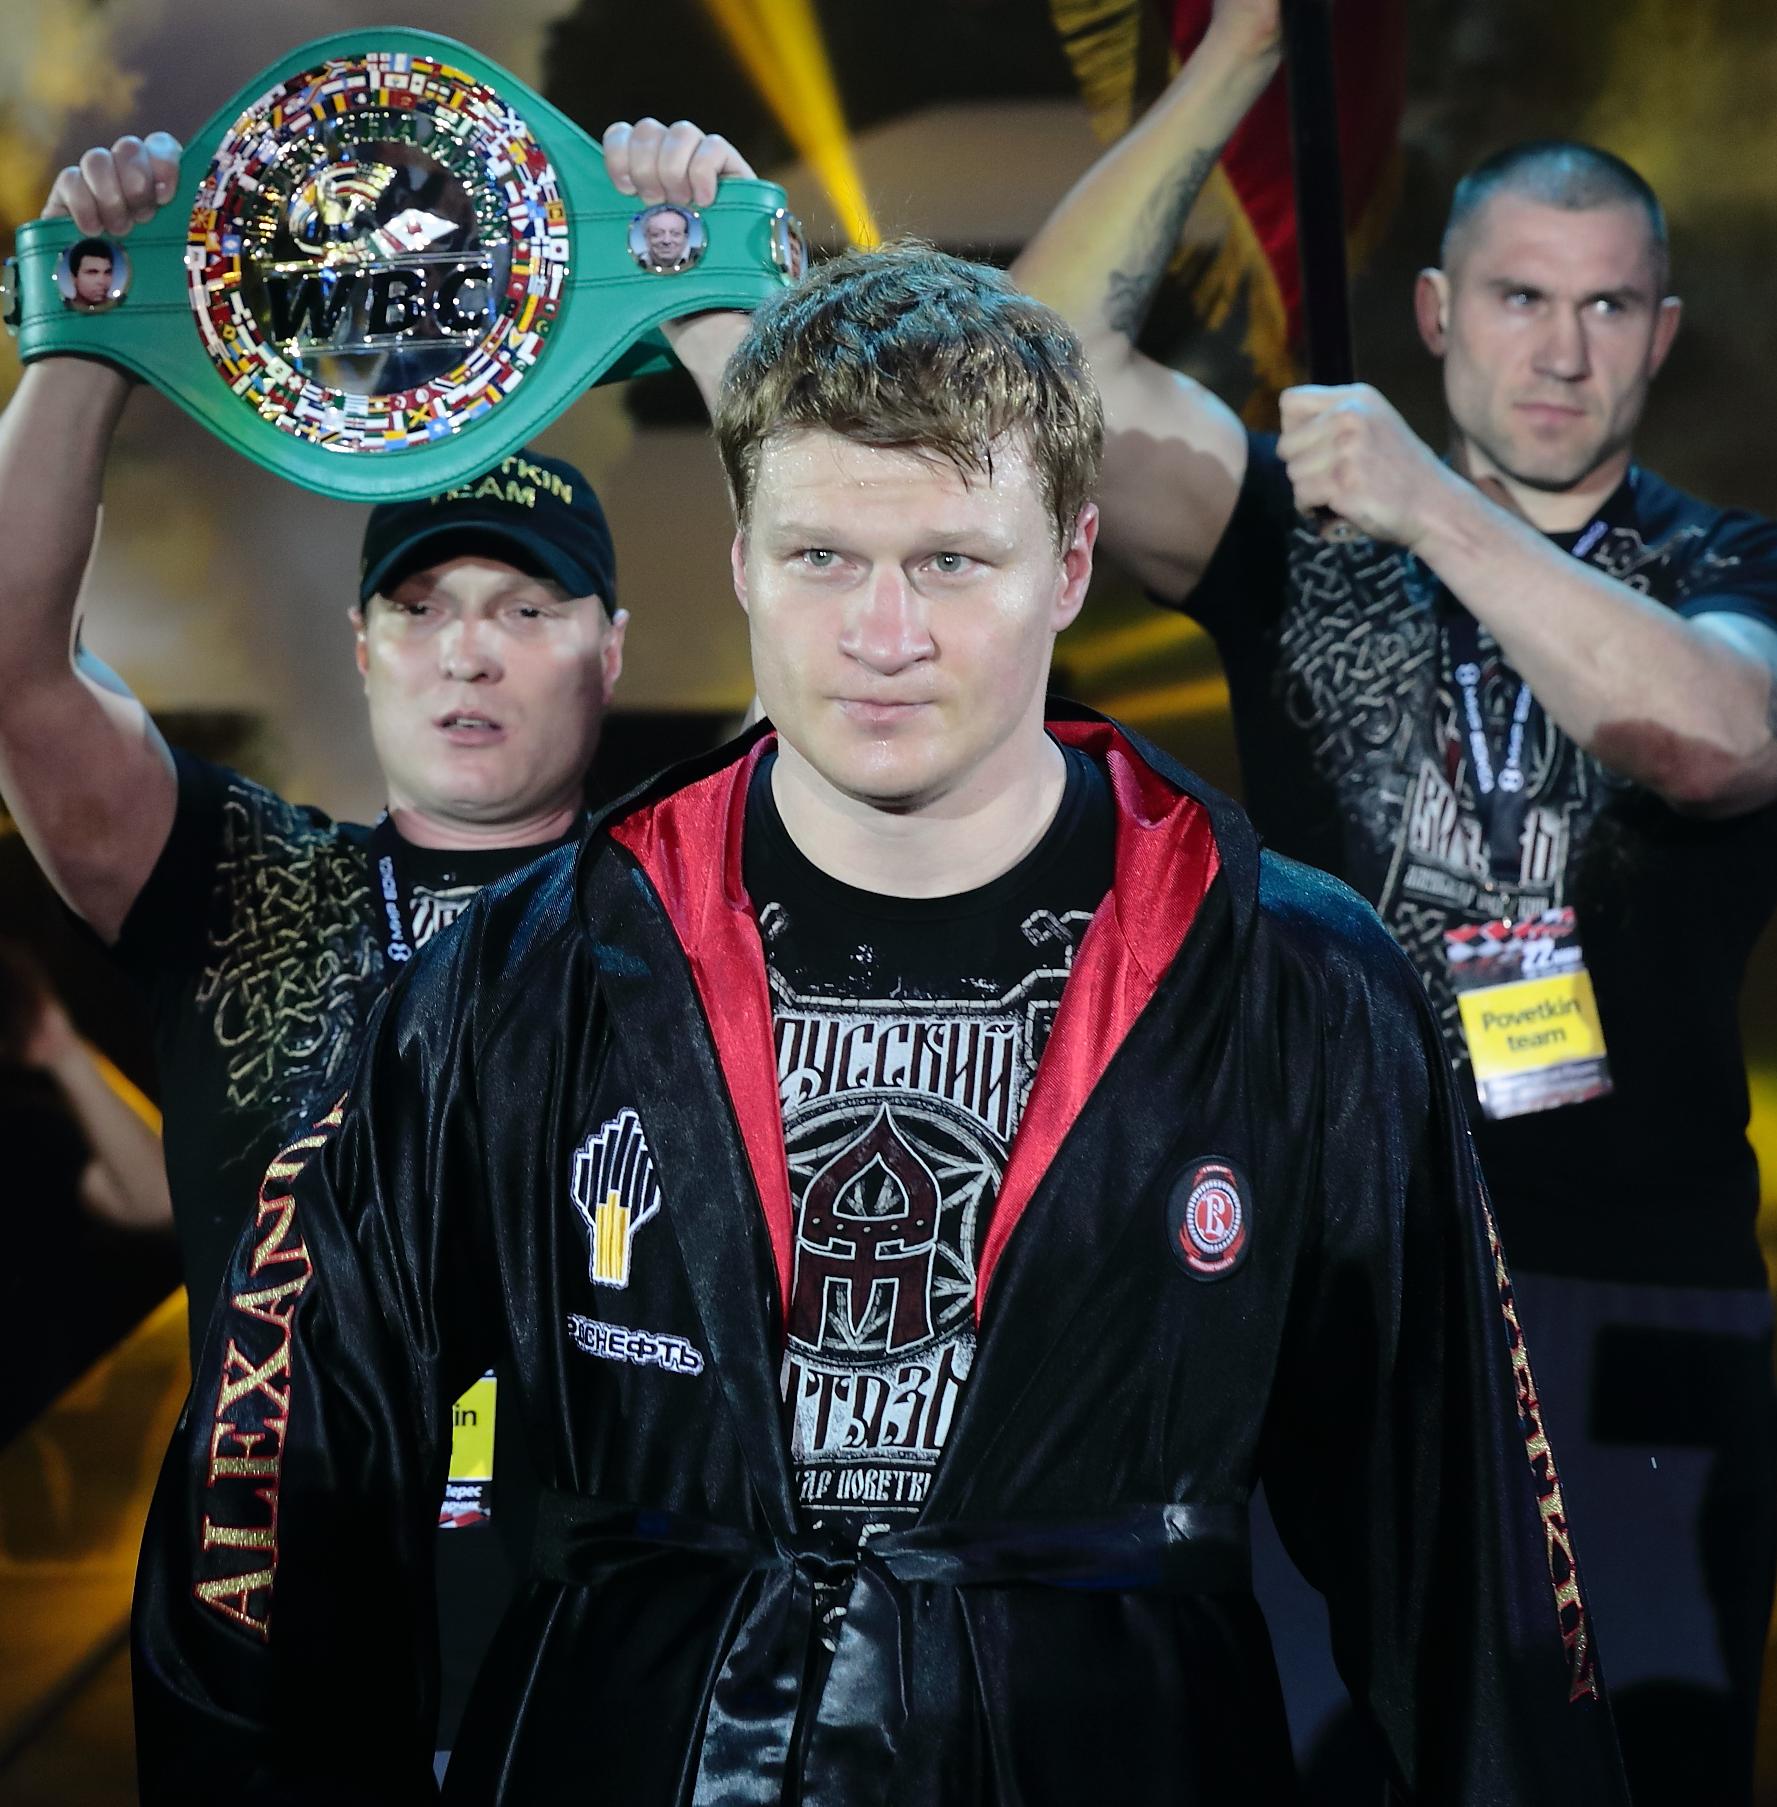 Александр Поветкин получил награду от WBC